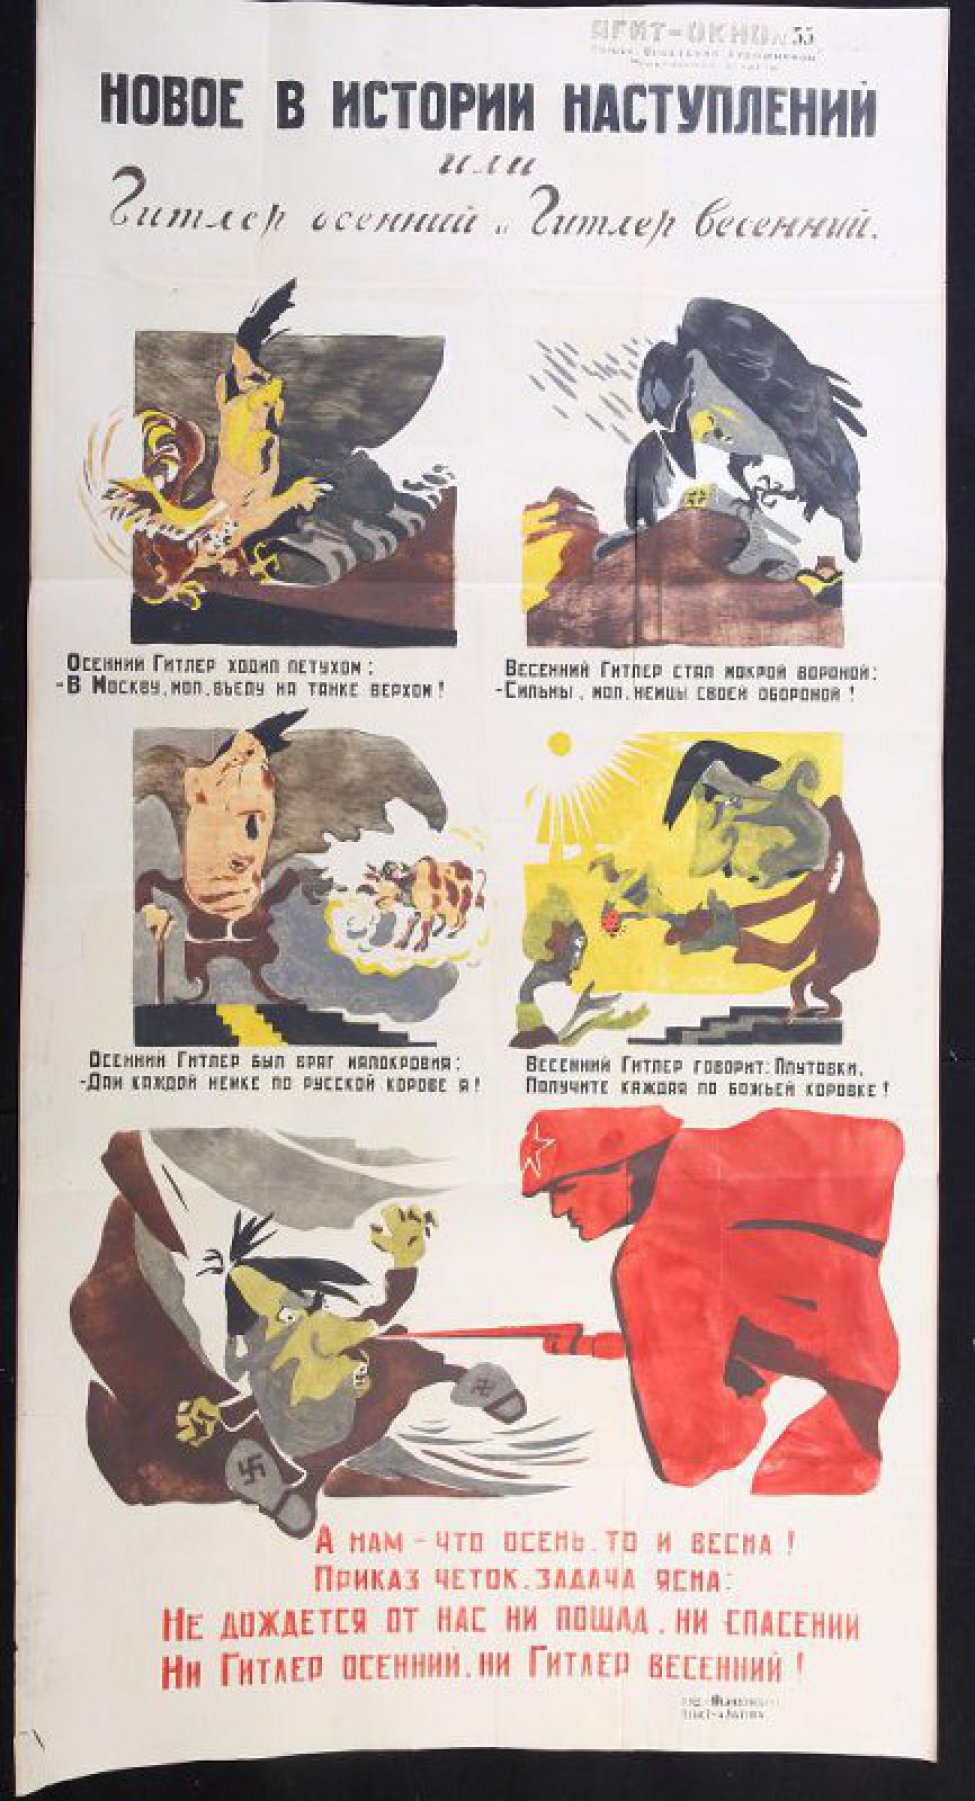 Помещено 5 рисунков: 1) Гитлер в образе петуха; 2) Гитлер в образе вороны; 3) Гитлер рядом с коровой; 4) Гитлер с божей коровкой в руке; 5) советский боец вонзает штык в нос Гитлеру.